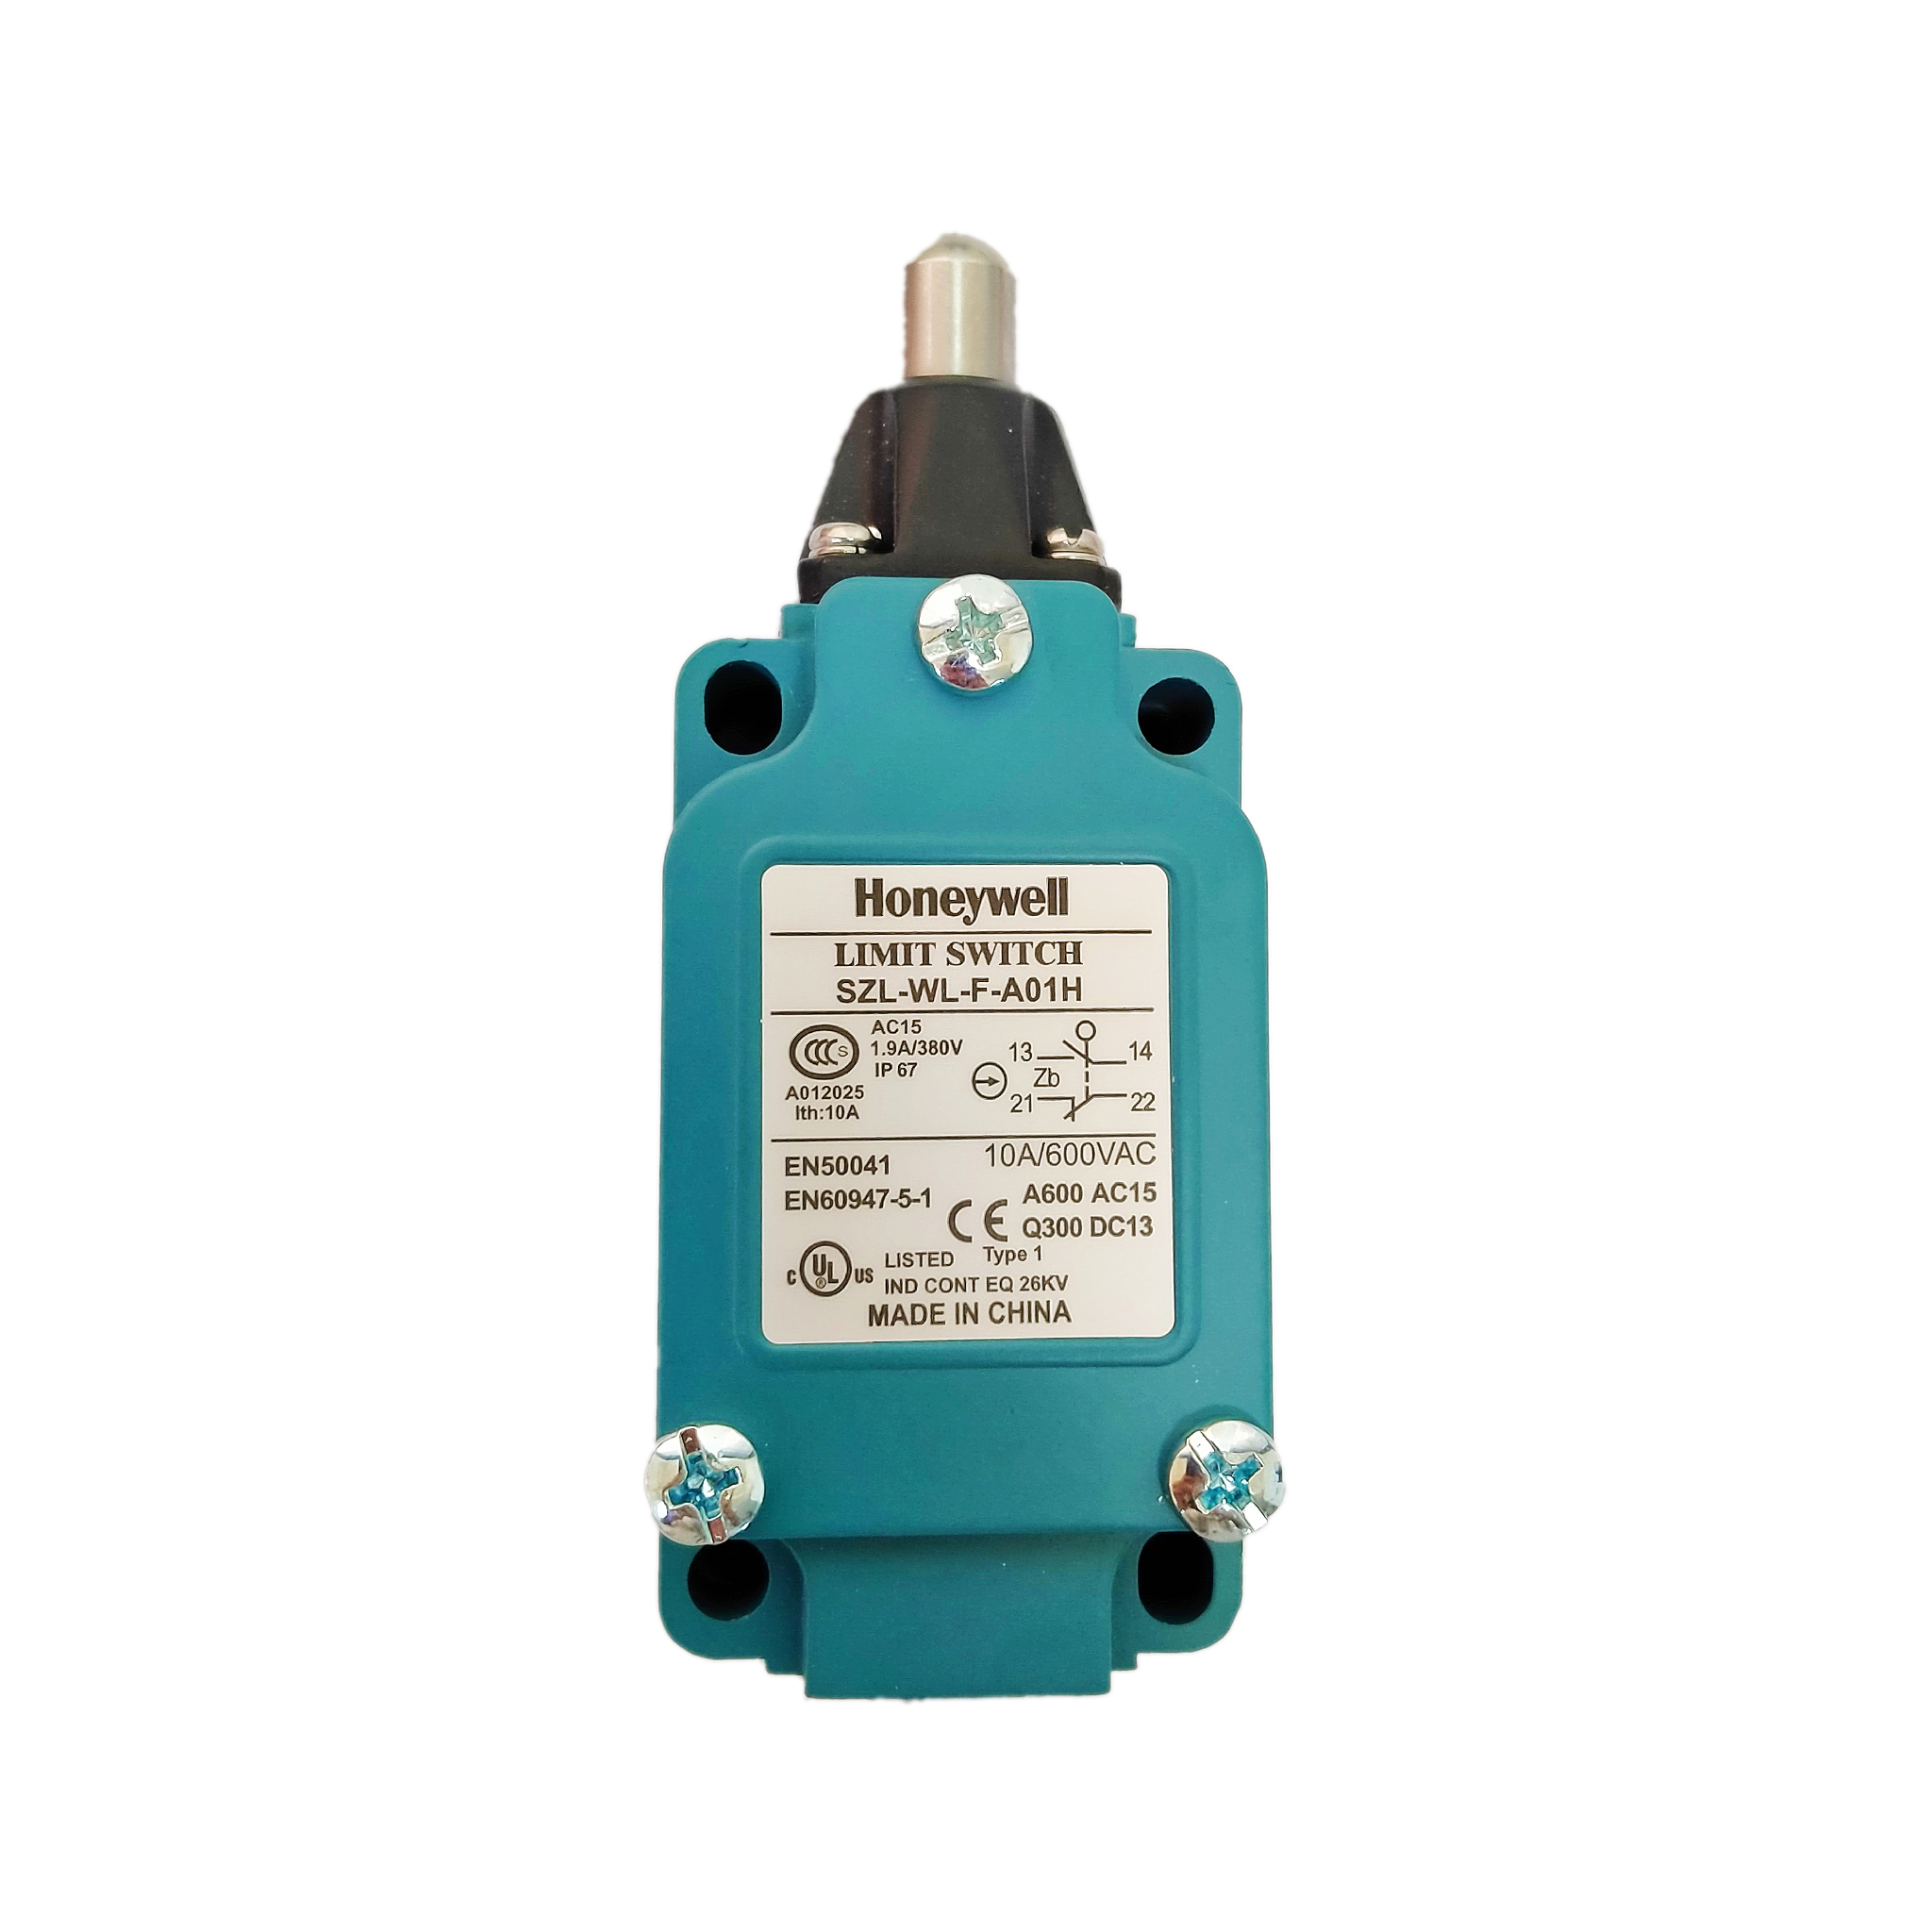 OOM202 (E01-00-0047) Honeywell Envitec Medical Oxygen Sensor, For